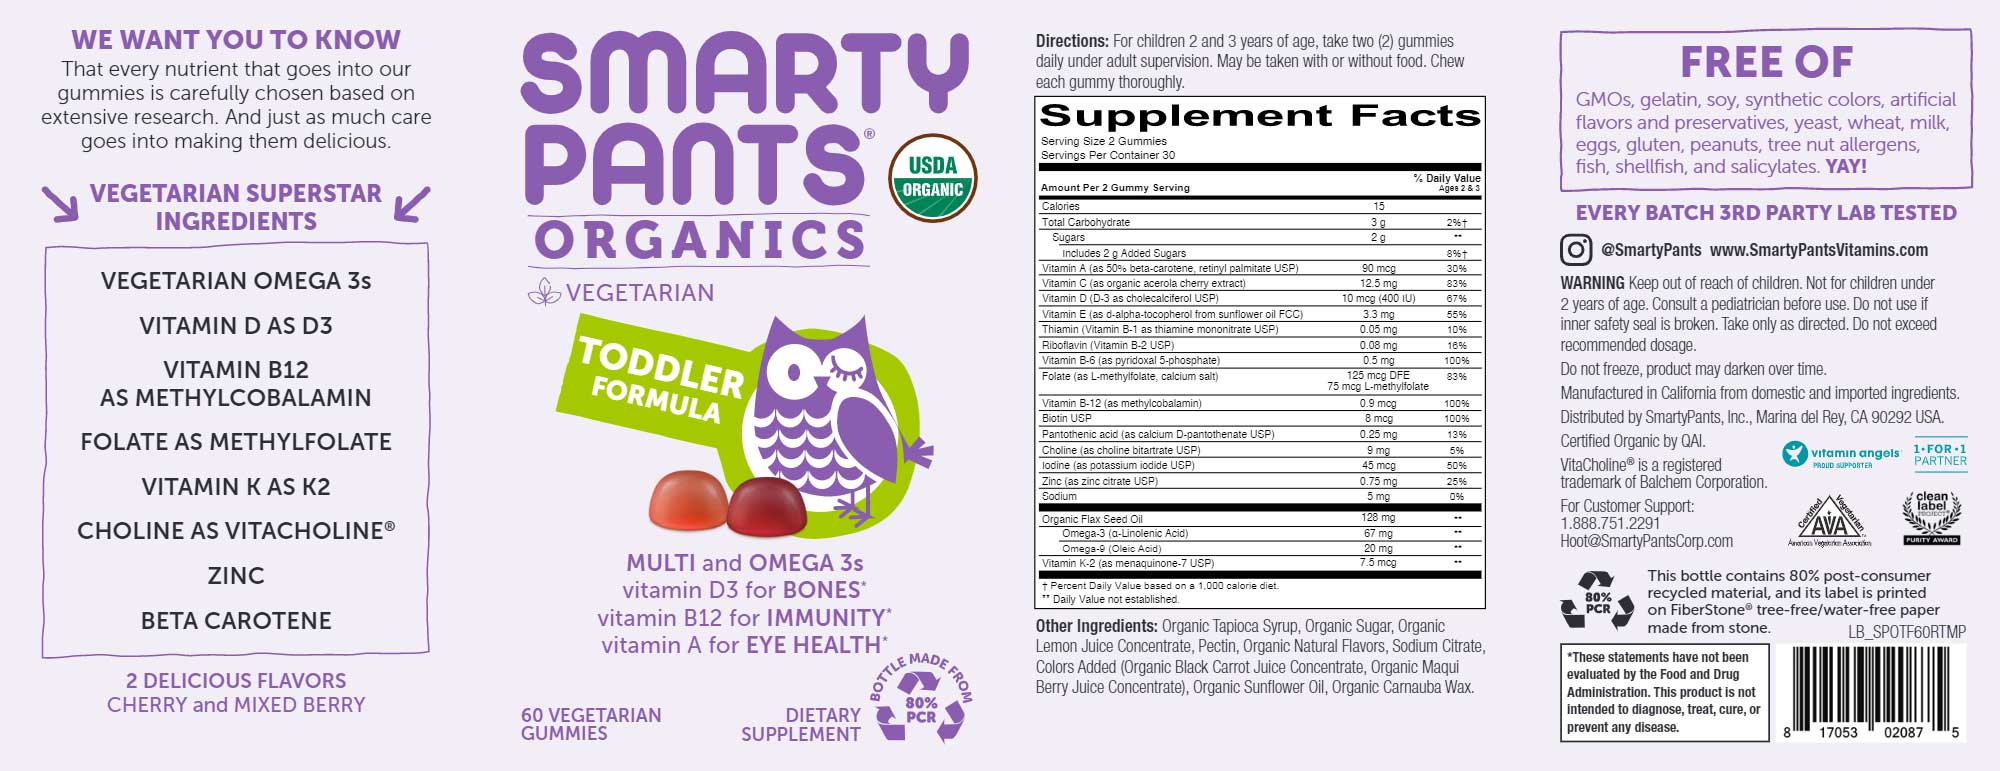 SmartyPants Toddler Formula Organic Ingredients